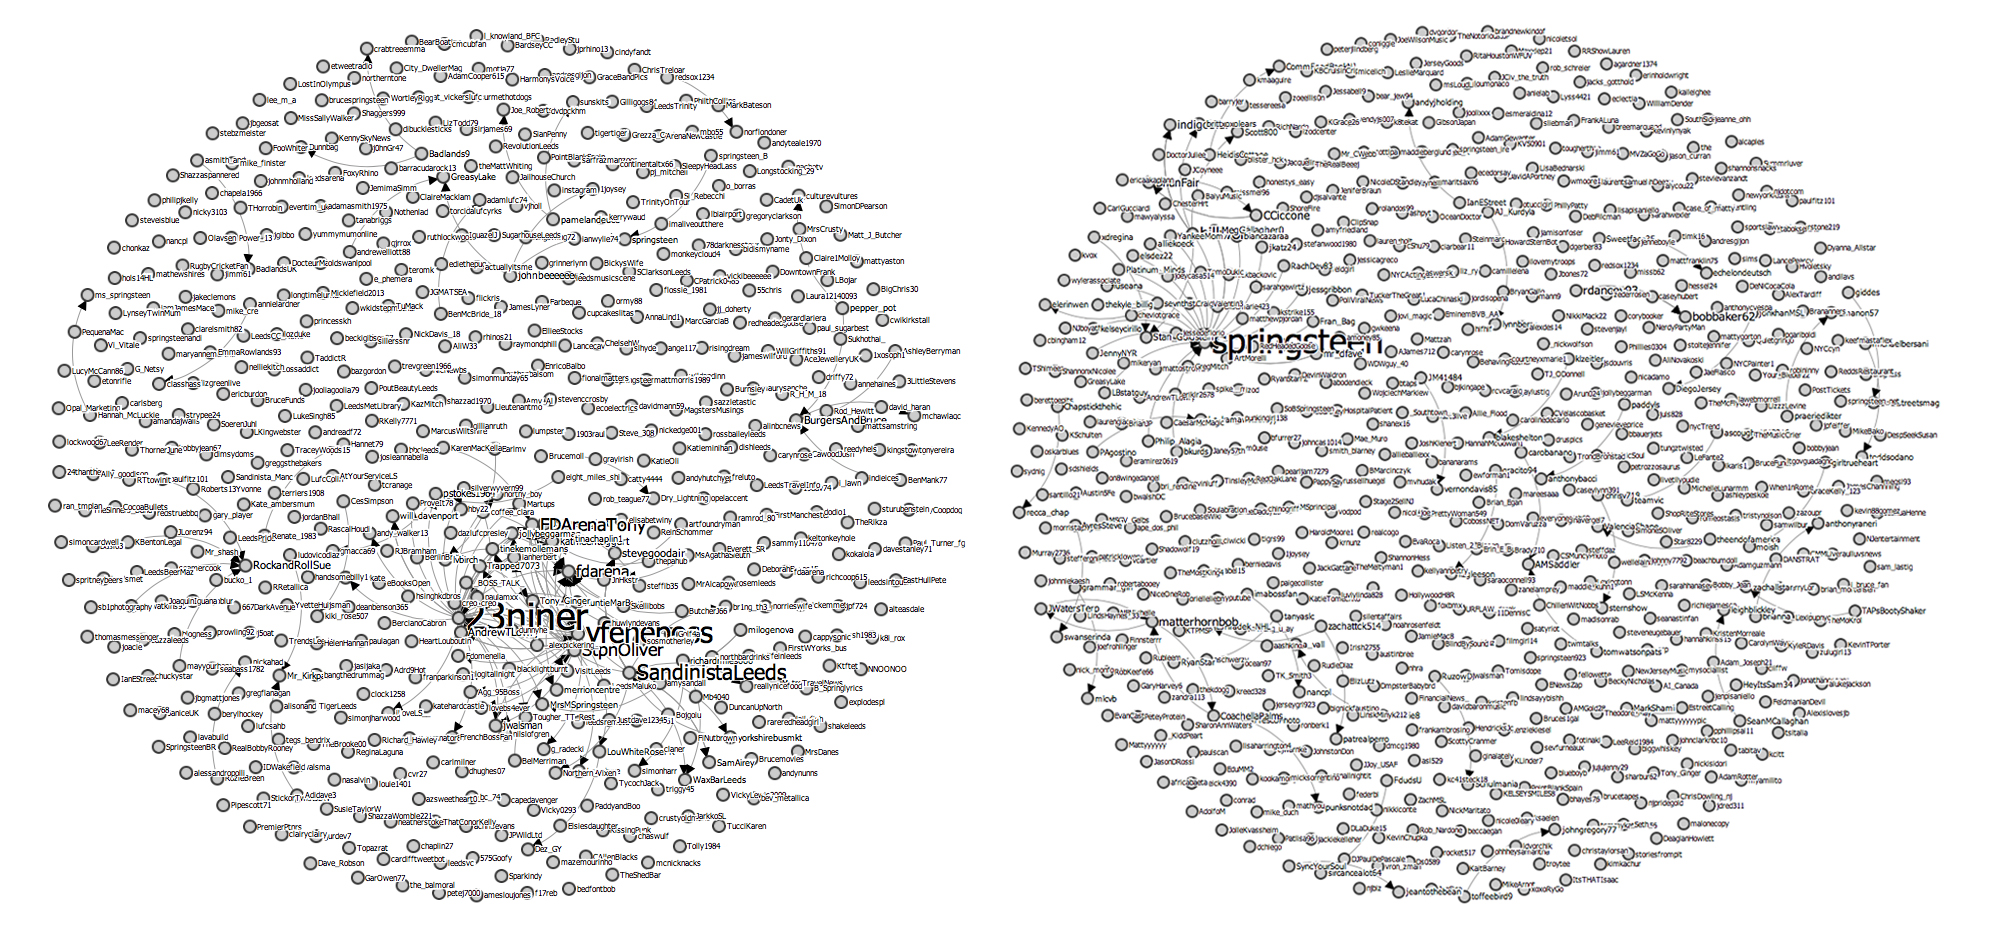 Network maps of #bruceleeds tweets (left) and Izod tweets.